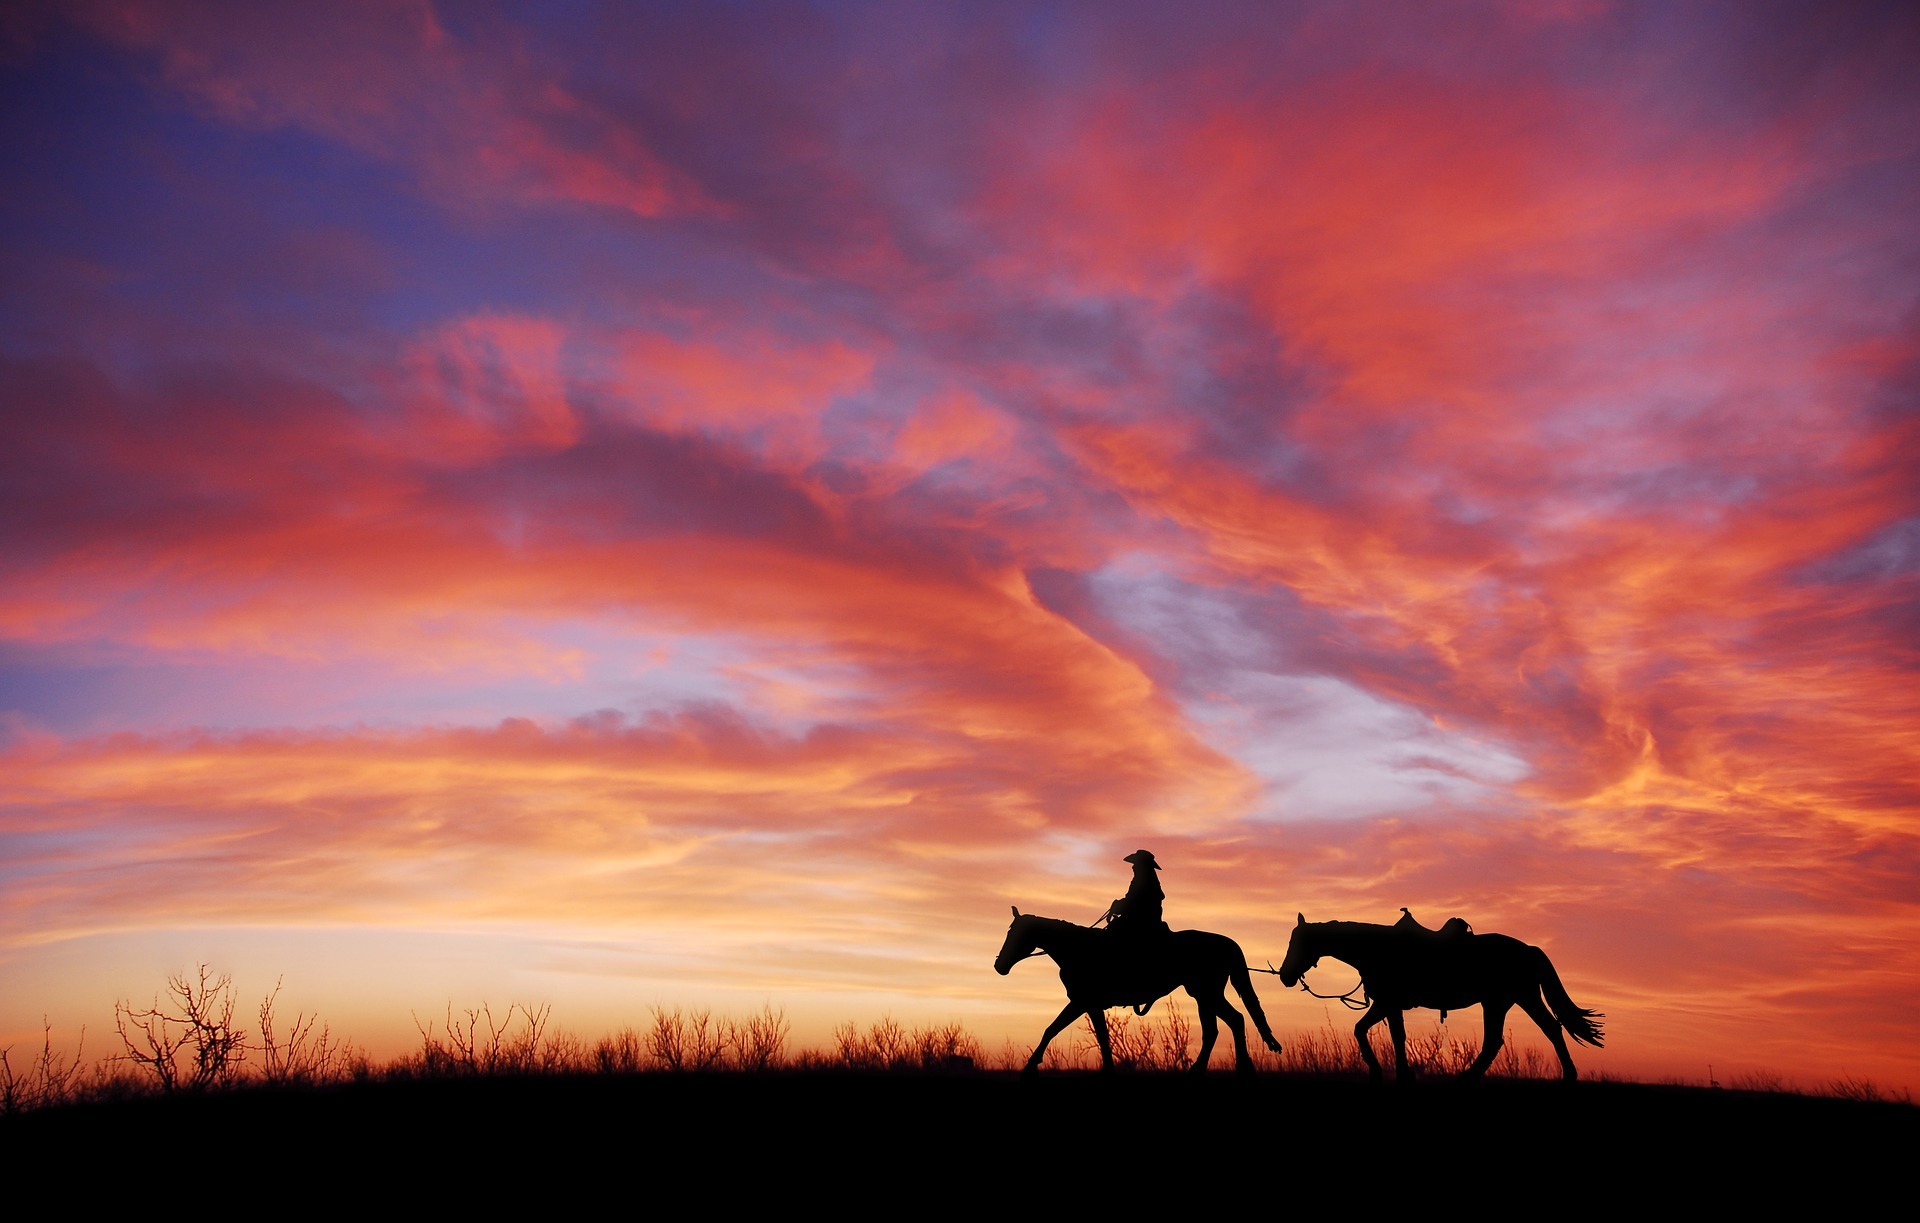 Cowboy_leading_horse_sunset_Pixabay.jpg